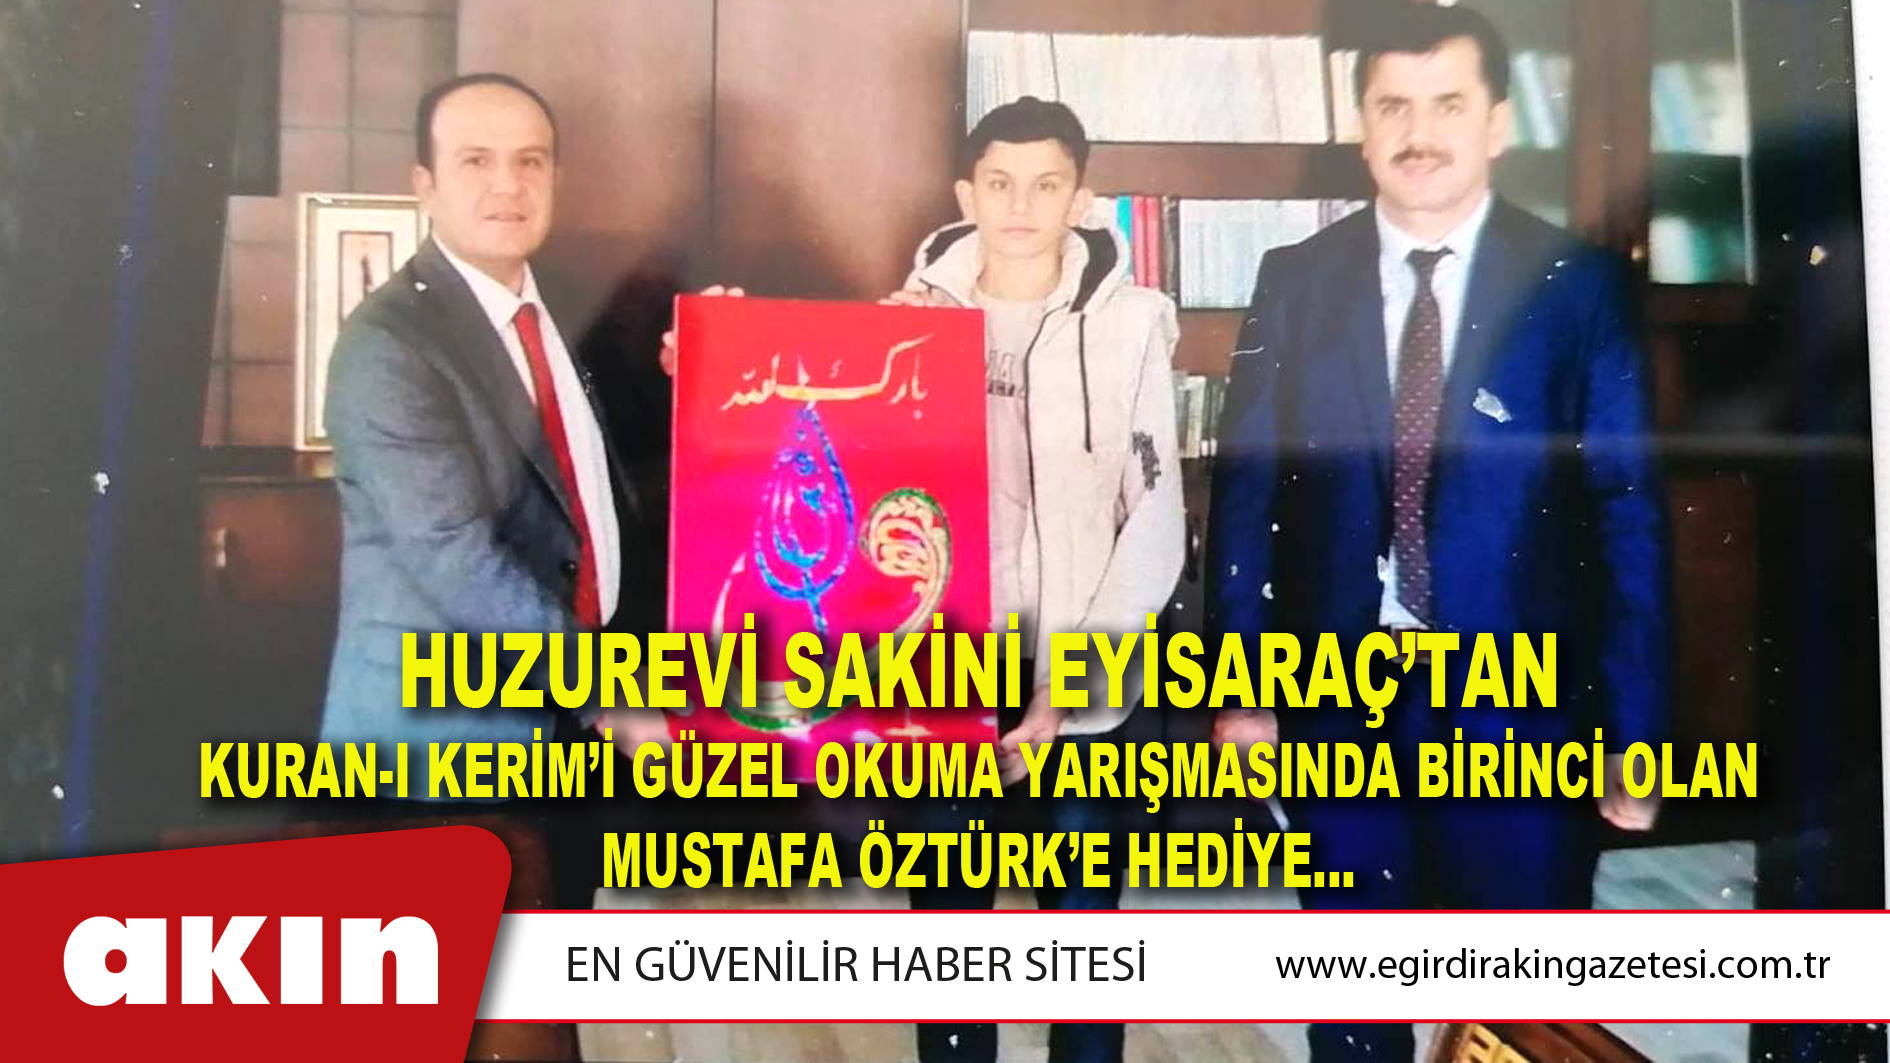 Huzurevi Sakini Eyisaraç’tan Kuran-I Kerim’i Güzel Okuma Yarışmasında Birinci Olan Mustafa Öztürk’e Hediye…